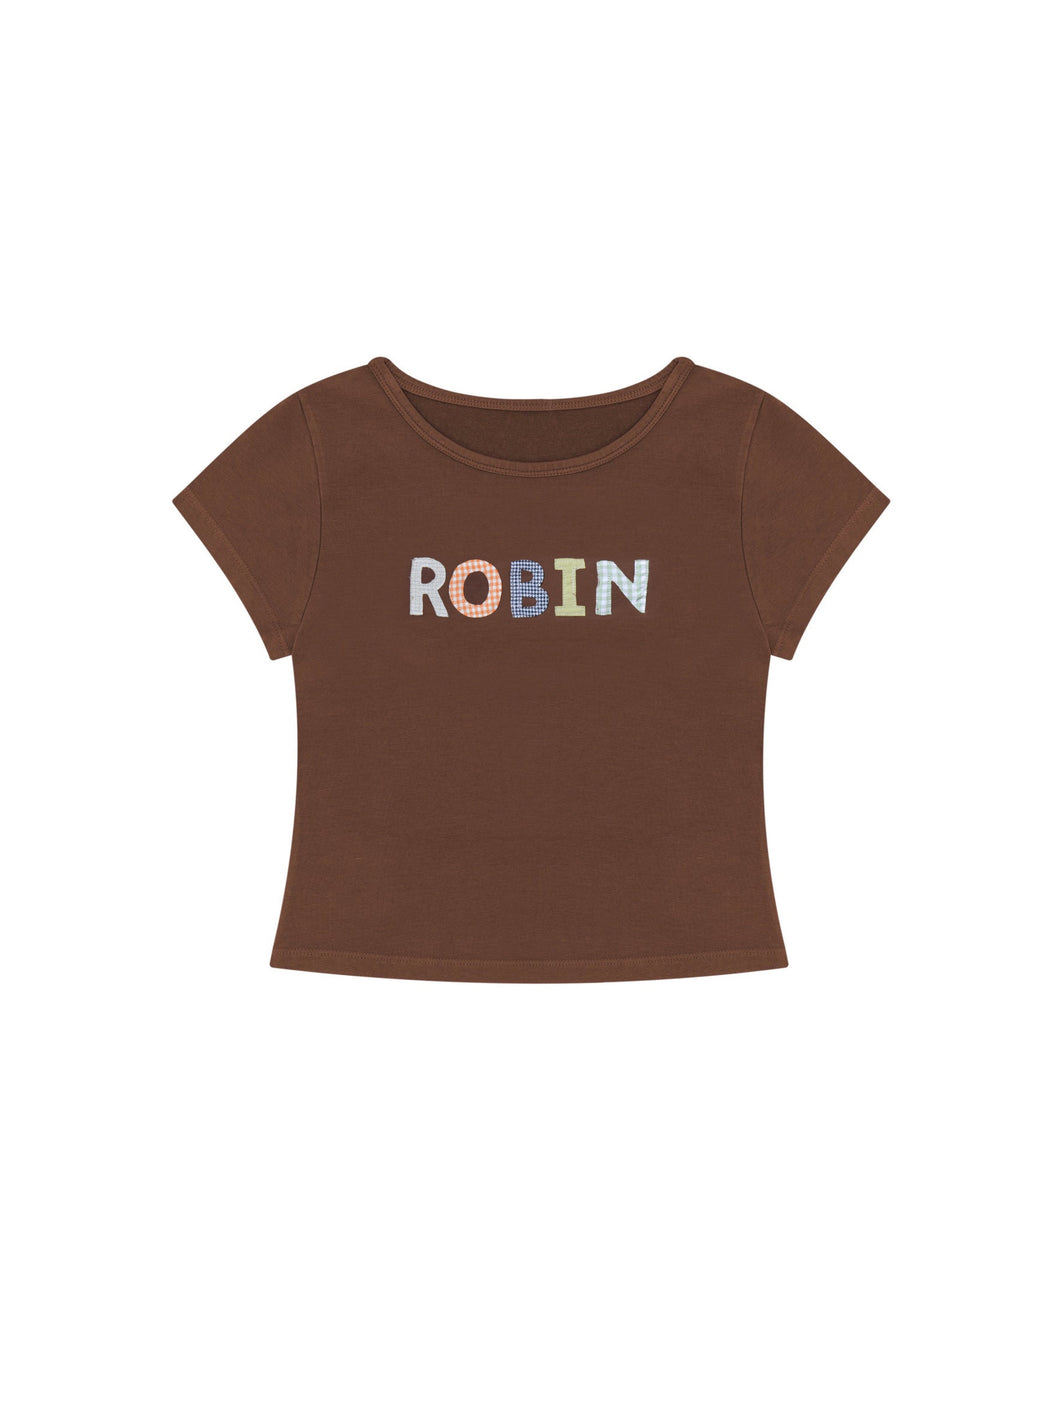 ROBIN Brown Baby Tee